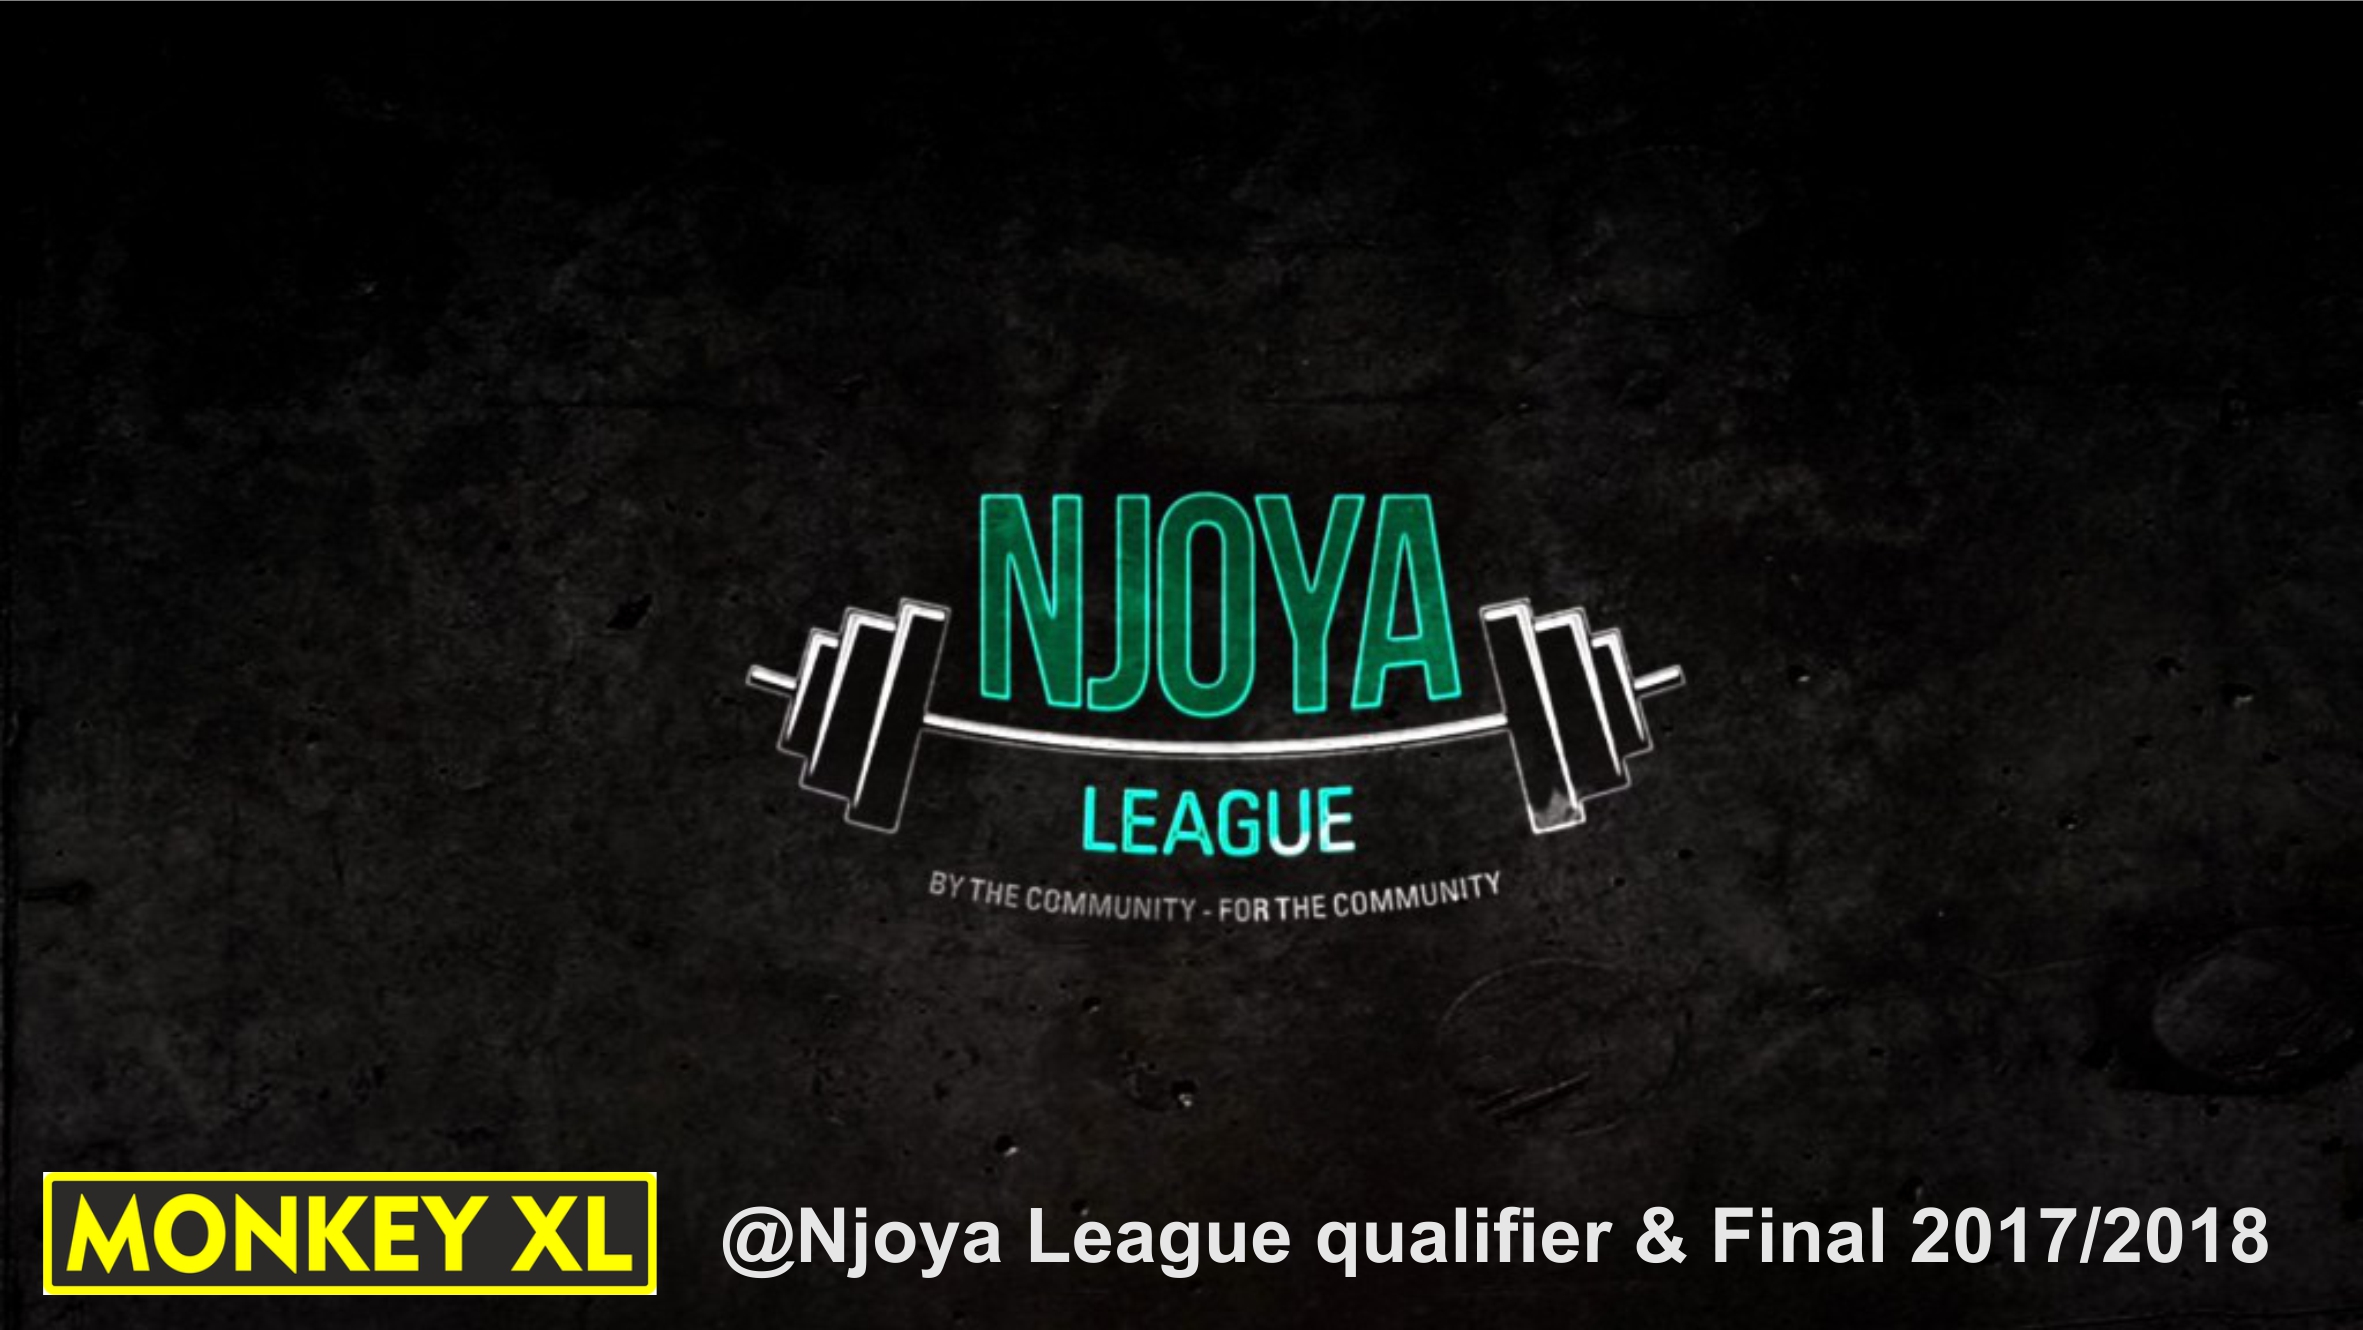 Njoya league CrossFit Monkey XL